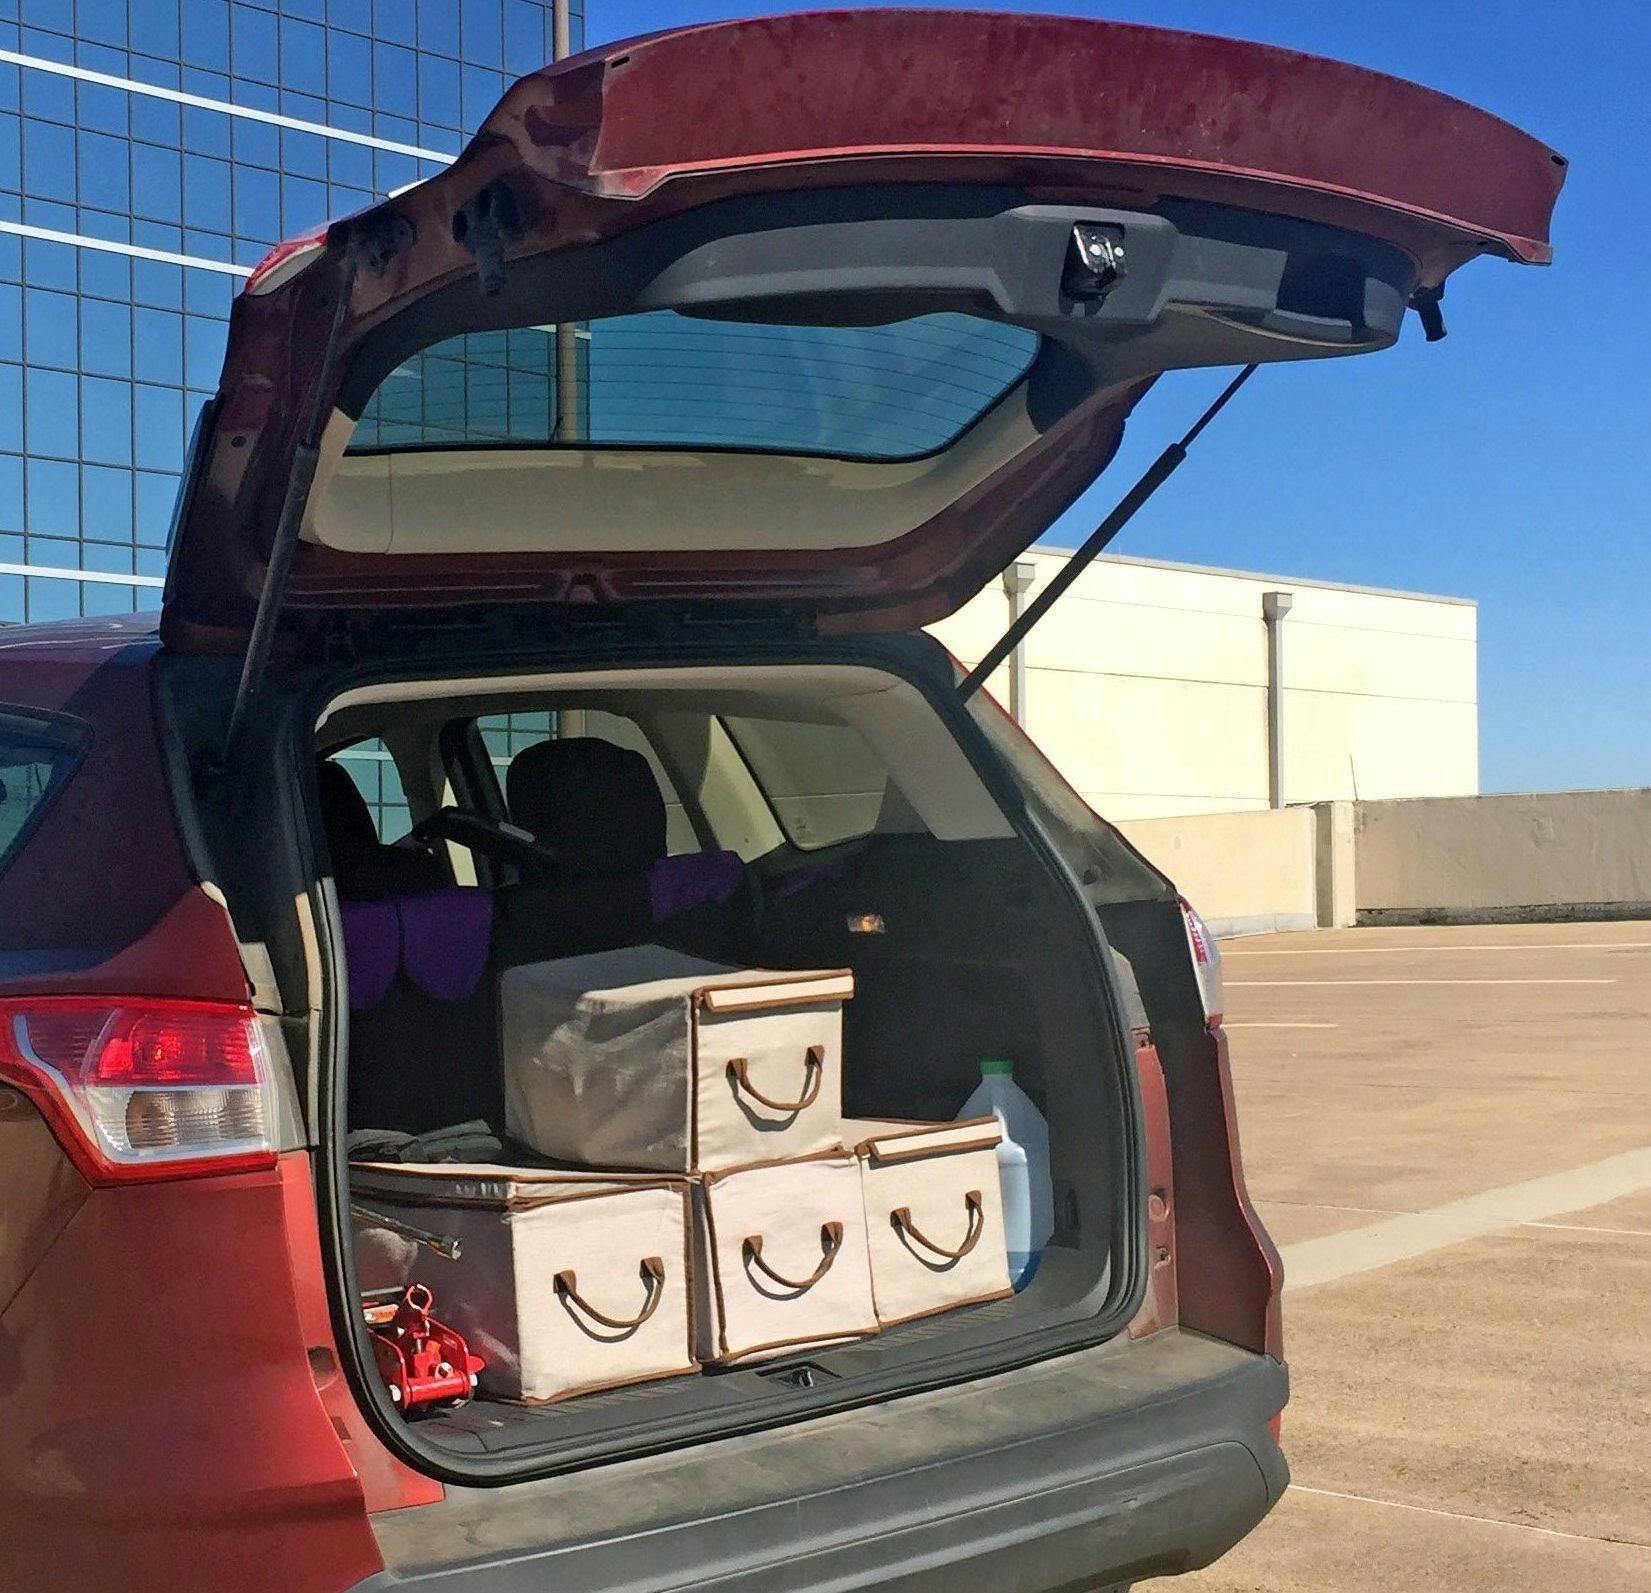 2015 Ford Escape CUV cargo